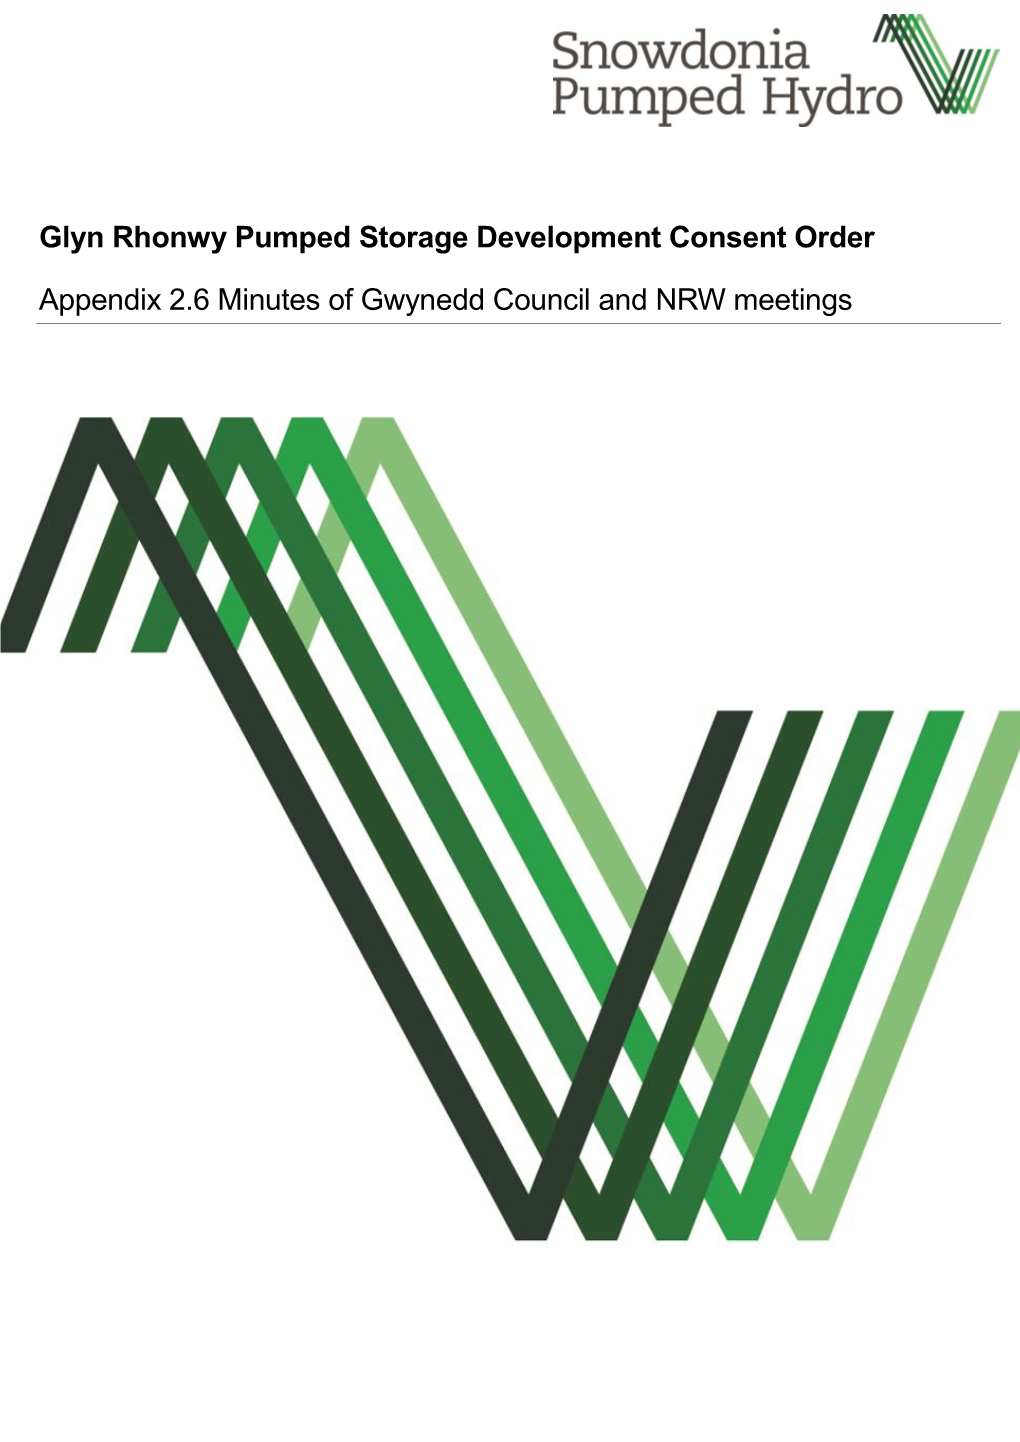 Glyn Rhonwy Pumped Storage Development Consent Order